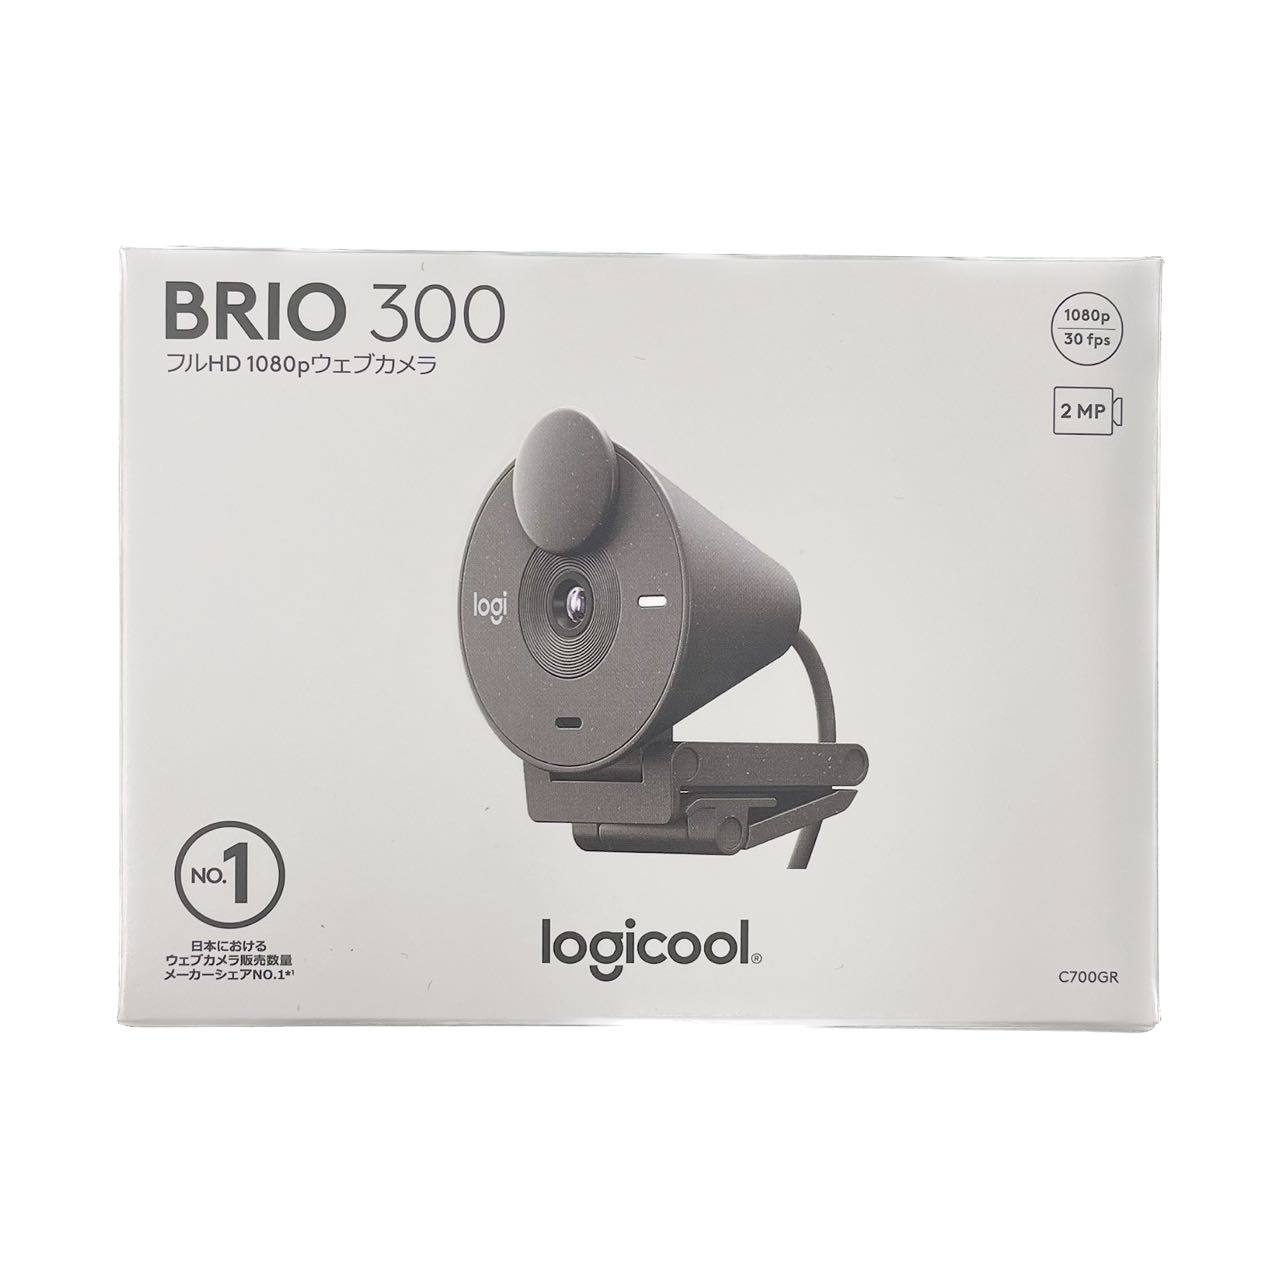 「新品未開封」BRIO 300 C700GR グラファイト ウェブカメラ 【即納】【あす楽】【プレゼント】